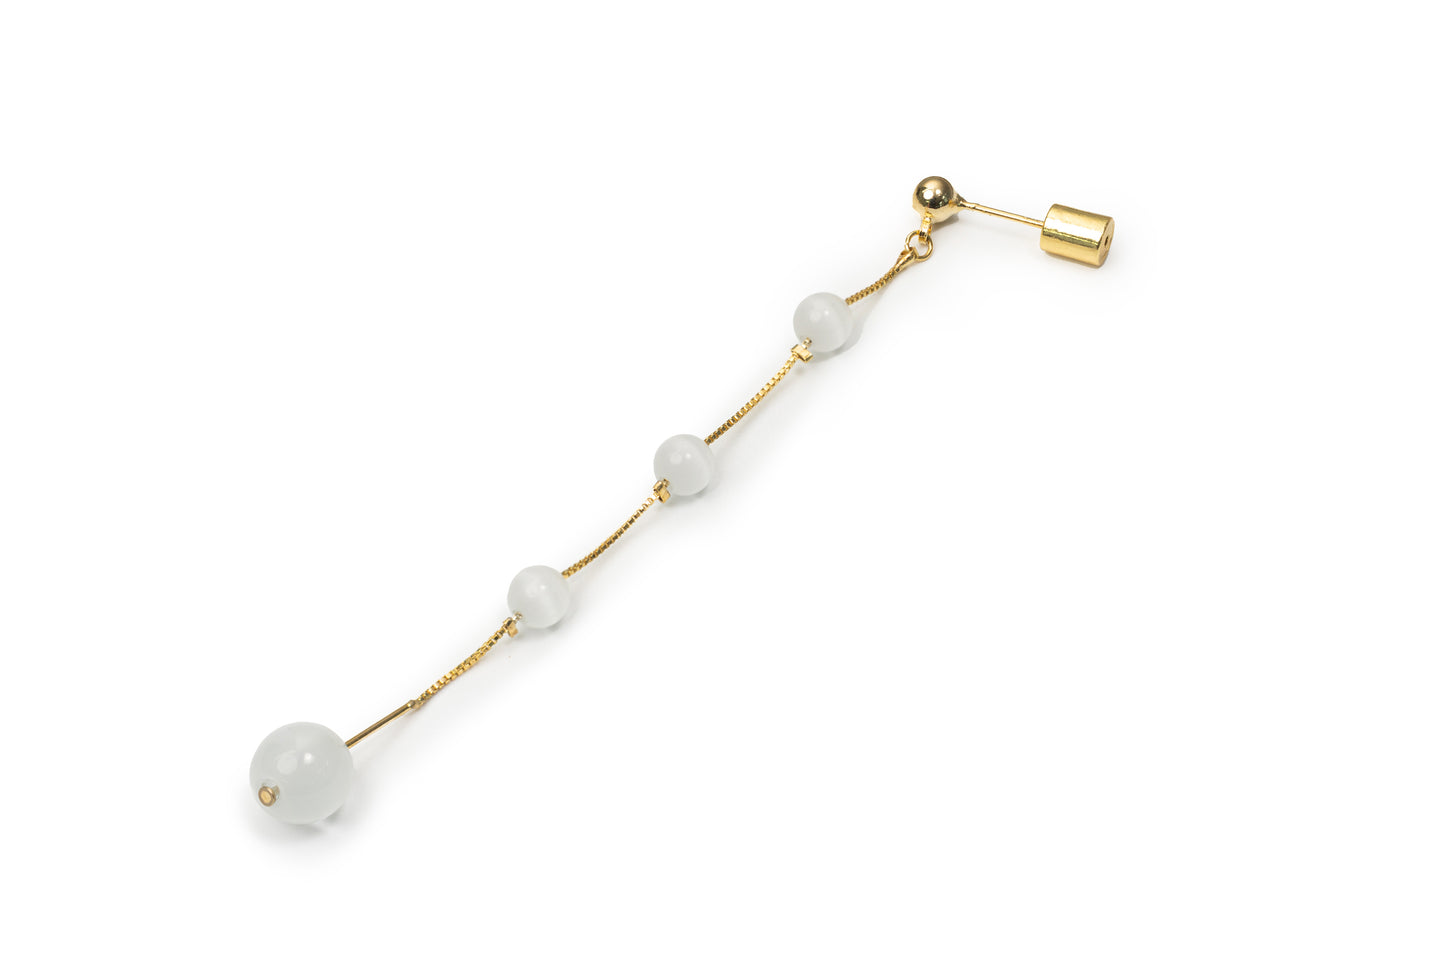 Planderful Mercury Drop Earrings - Golden Drop Earrings for Women